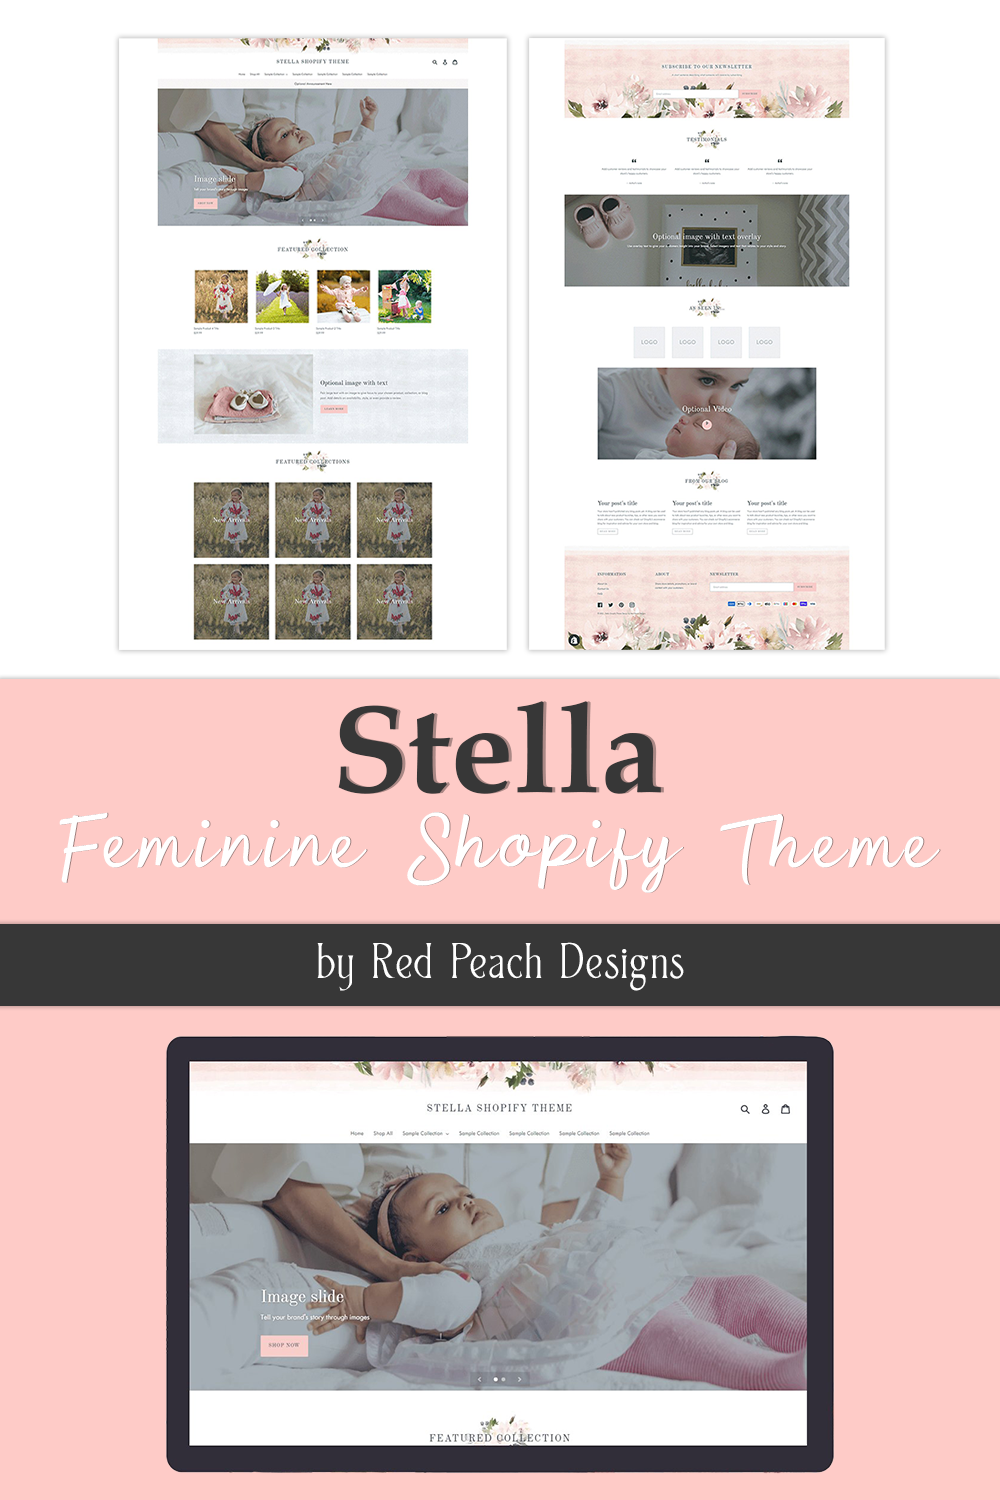 Stella feminine shopify theme of pinterest.